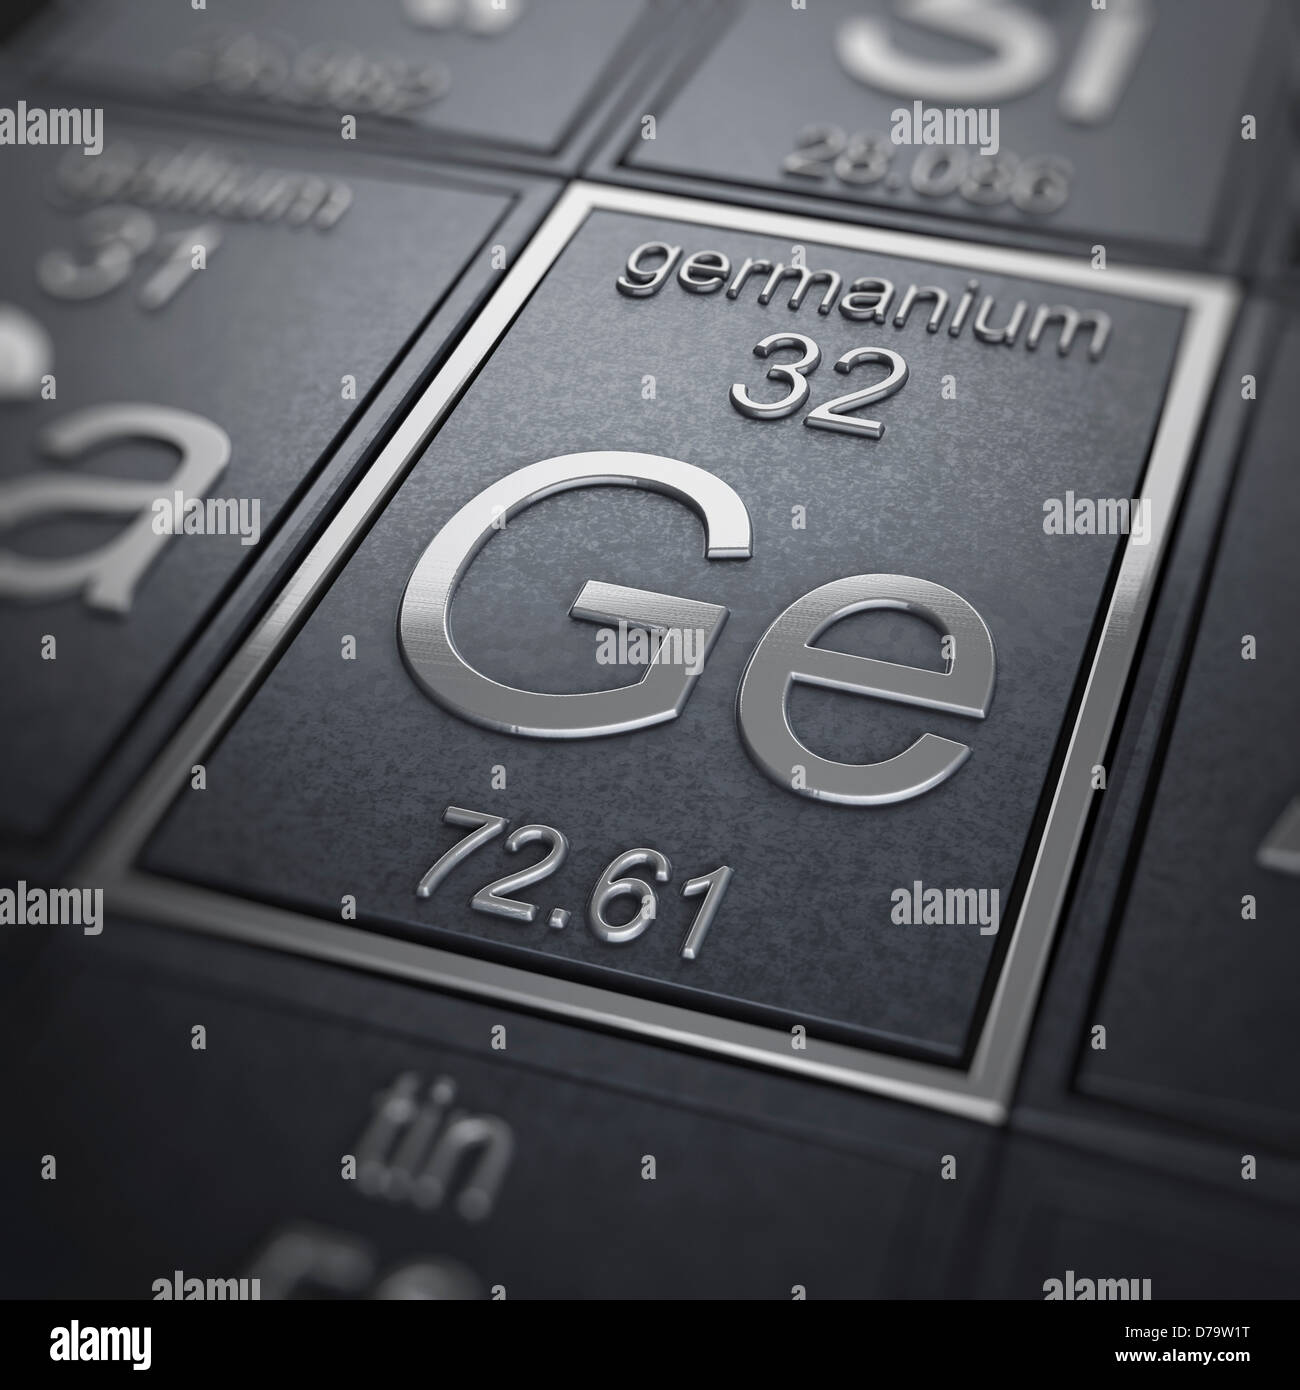 Elemento químico germanio) Foto de stock